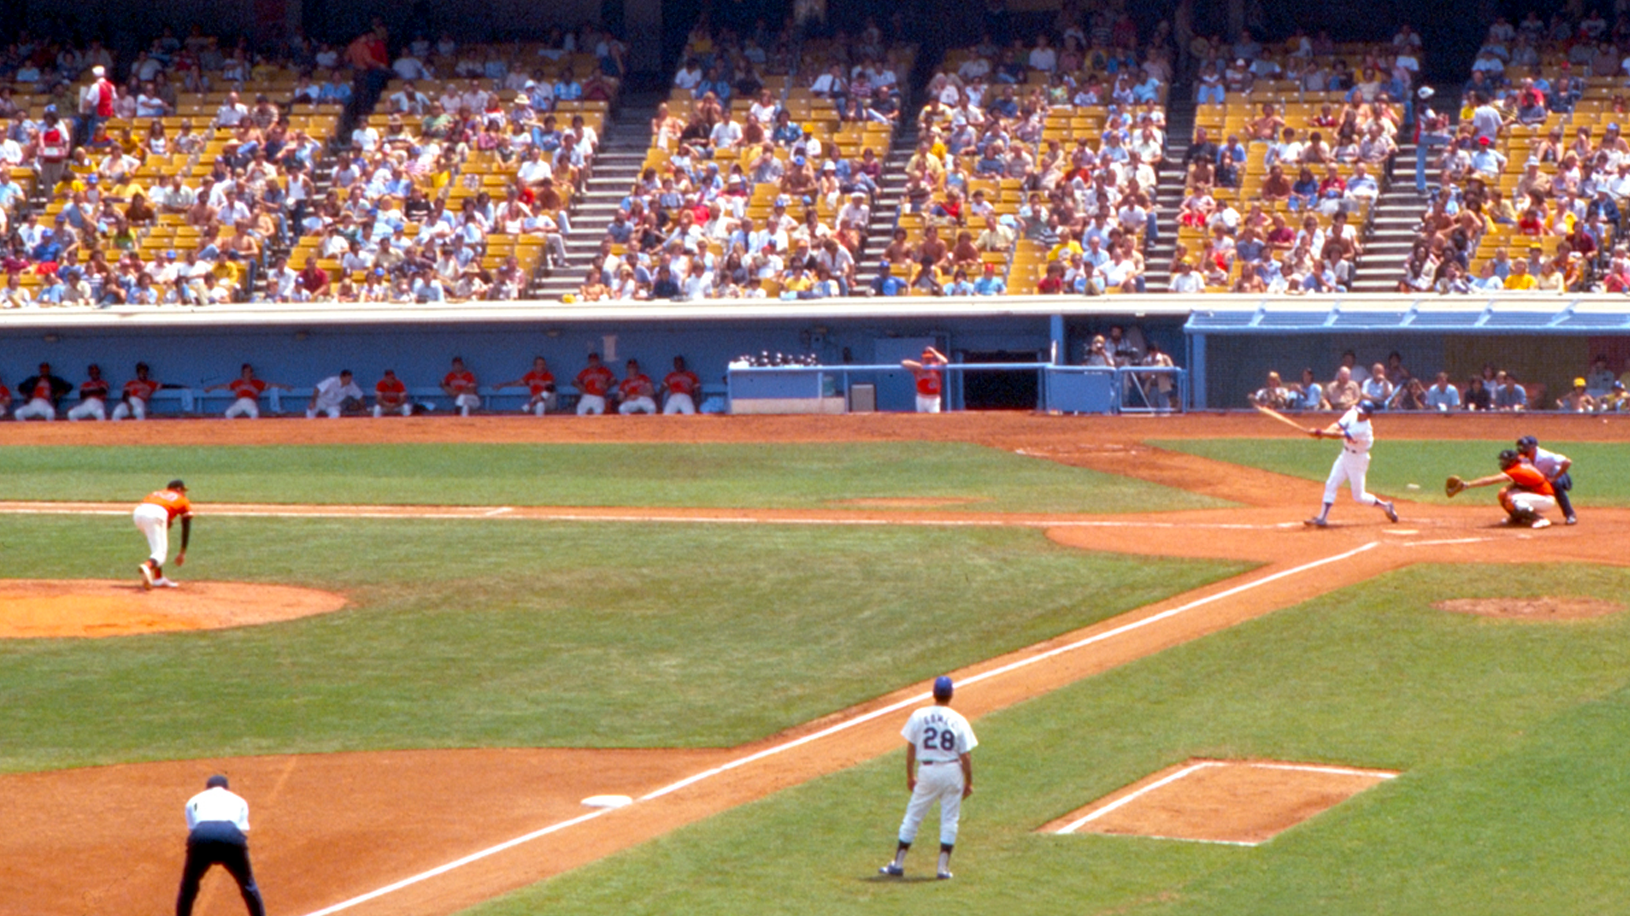 Dodgers vs. Giants baseball game August 1977